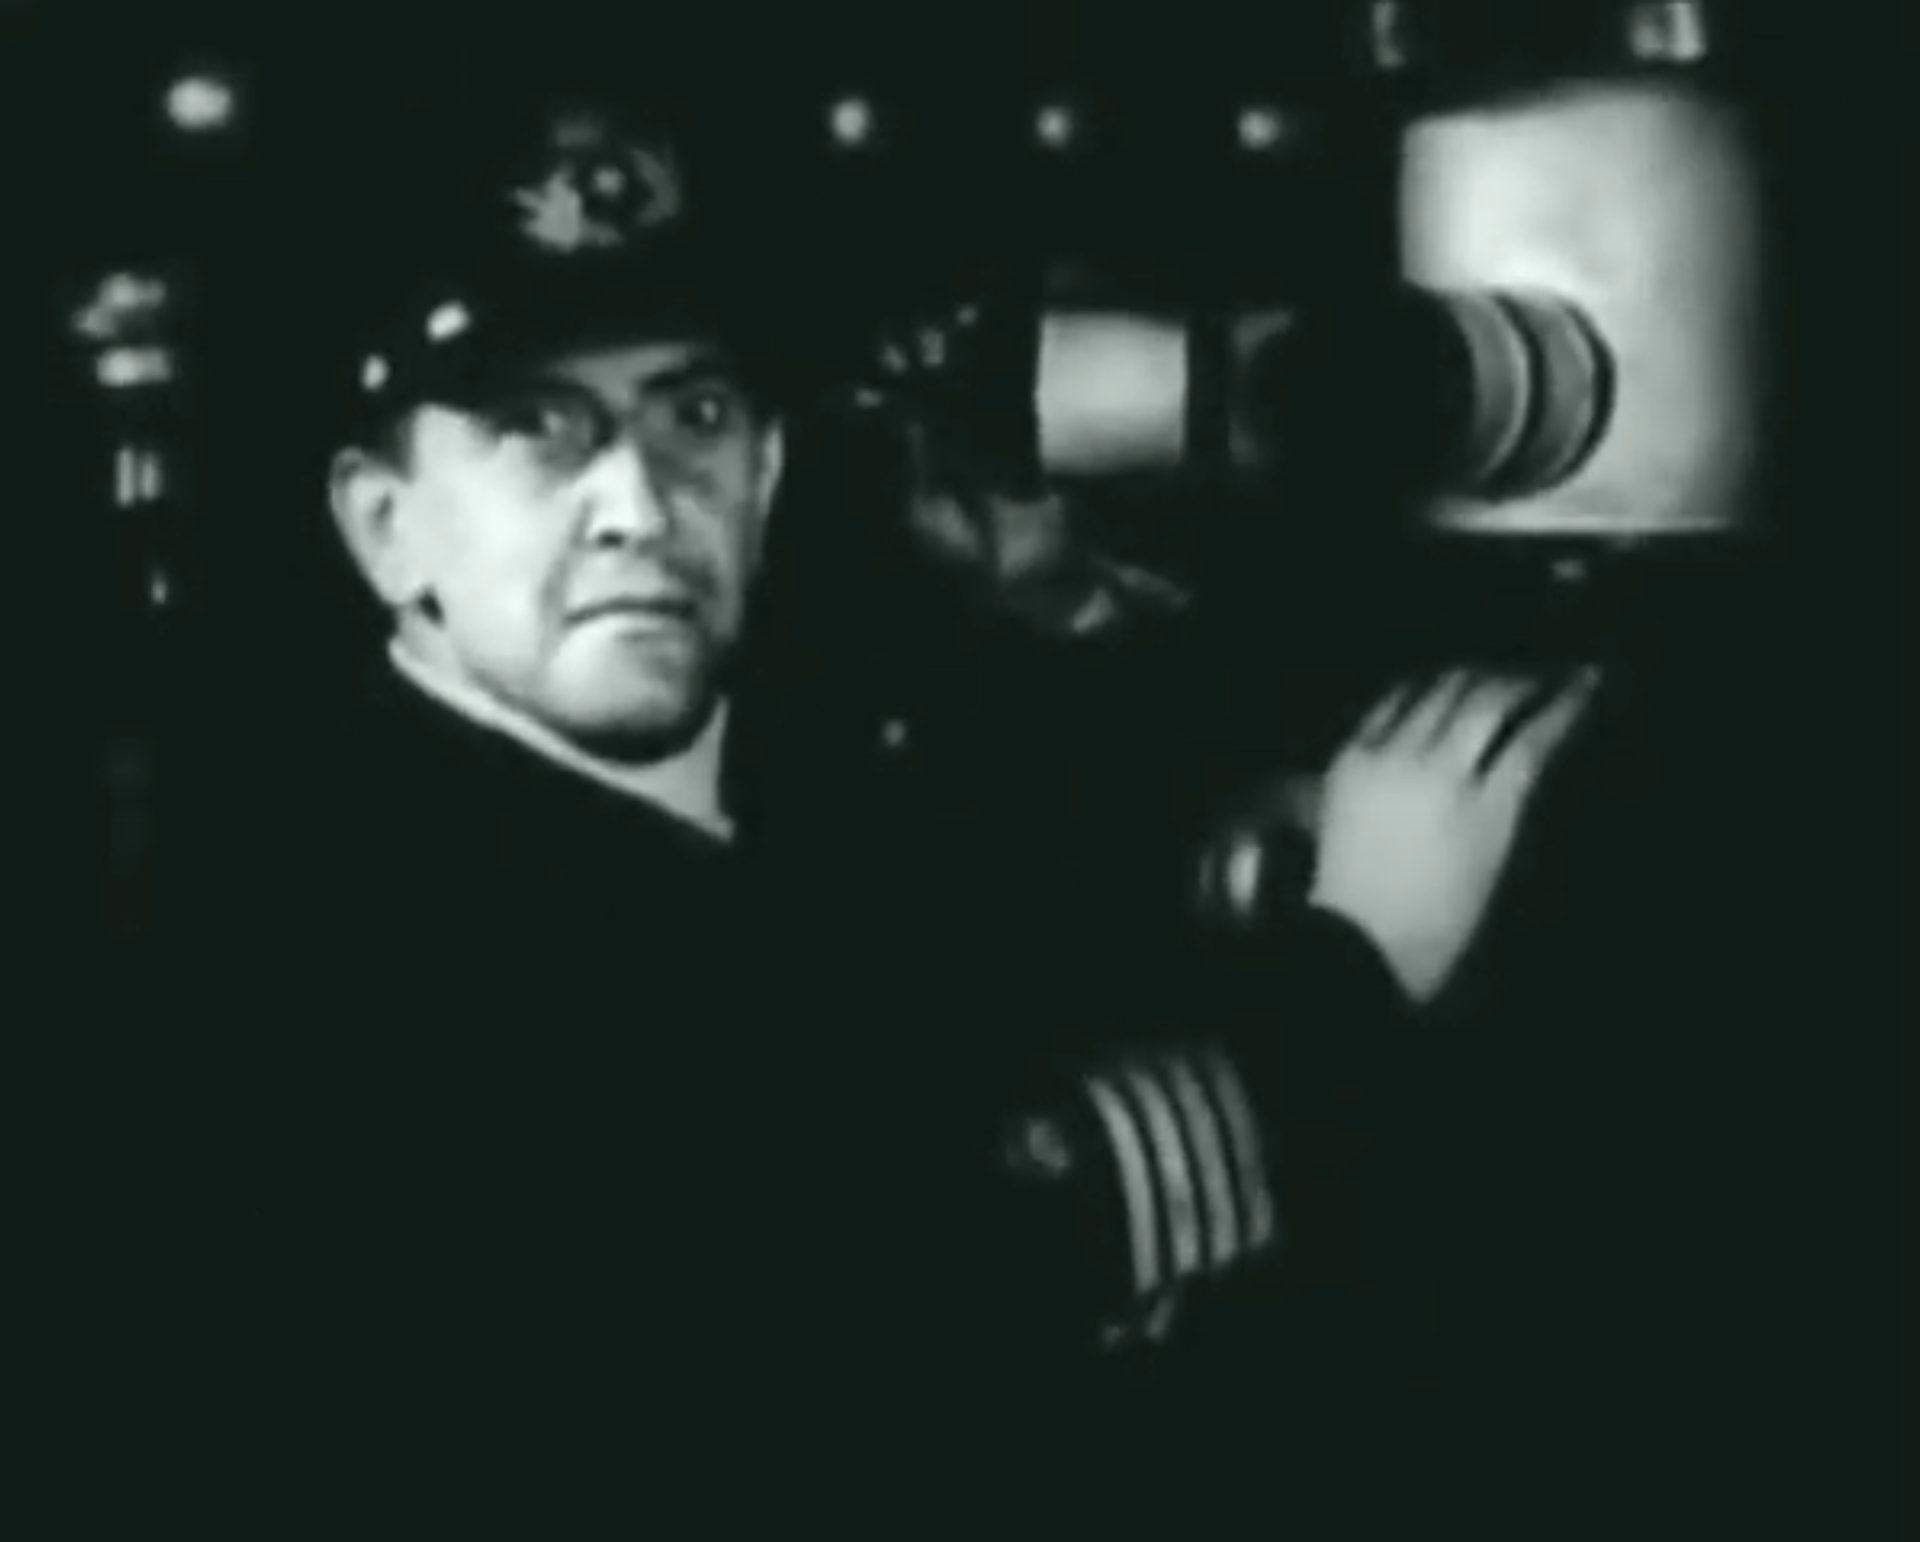 Schwarz-weiße Nahaufnahme eines deutschen U-Boot-Kapitäns am Periskop, der in die Kamera blickt.